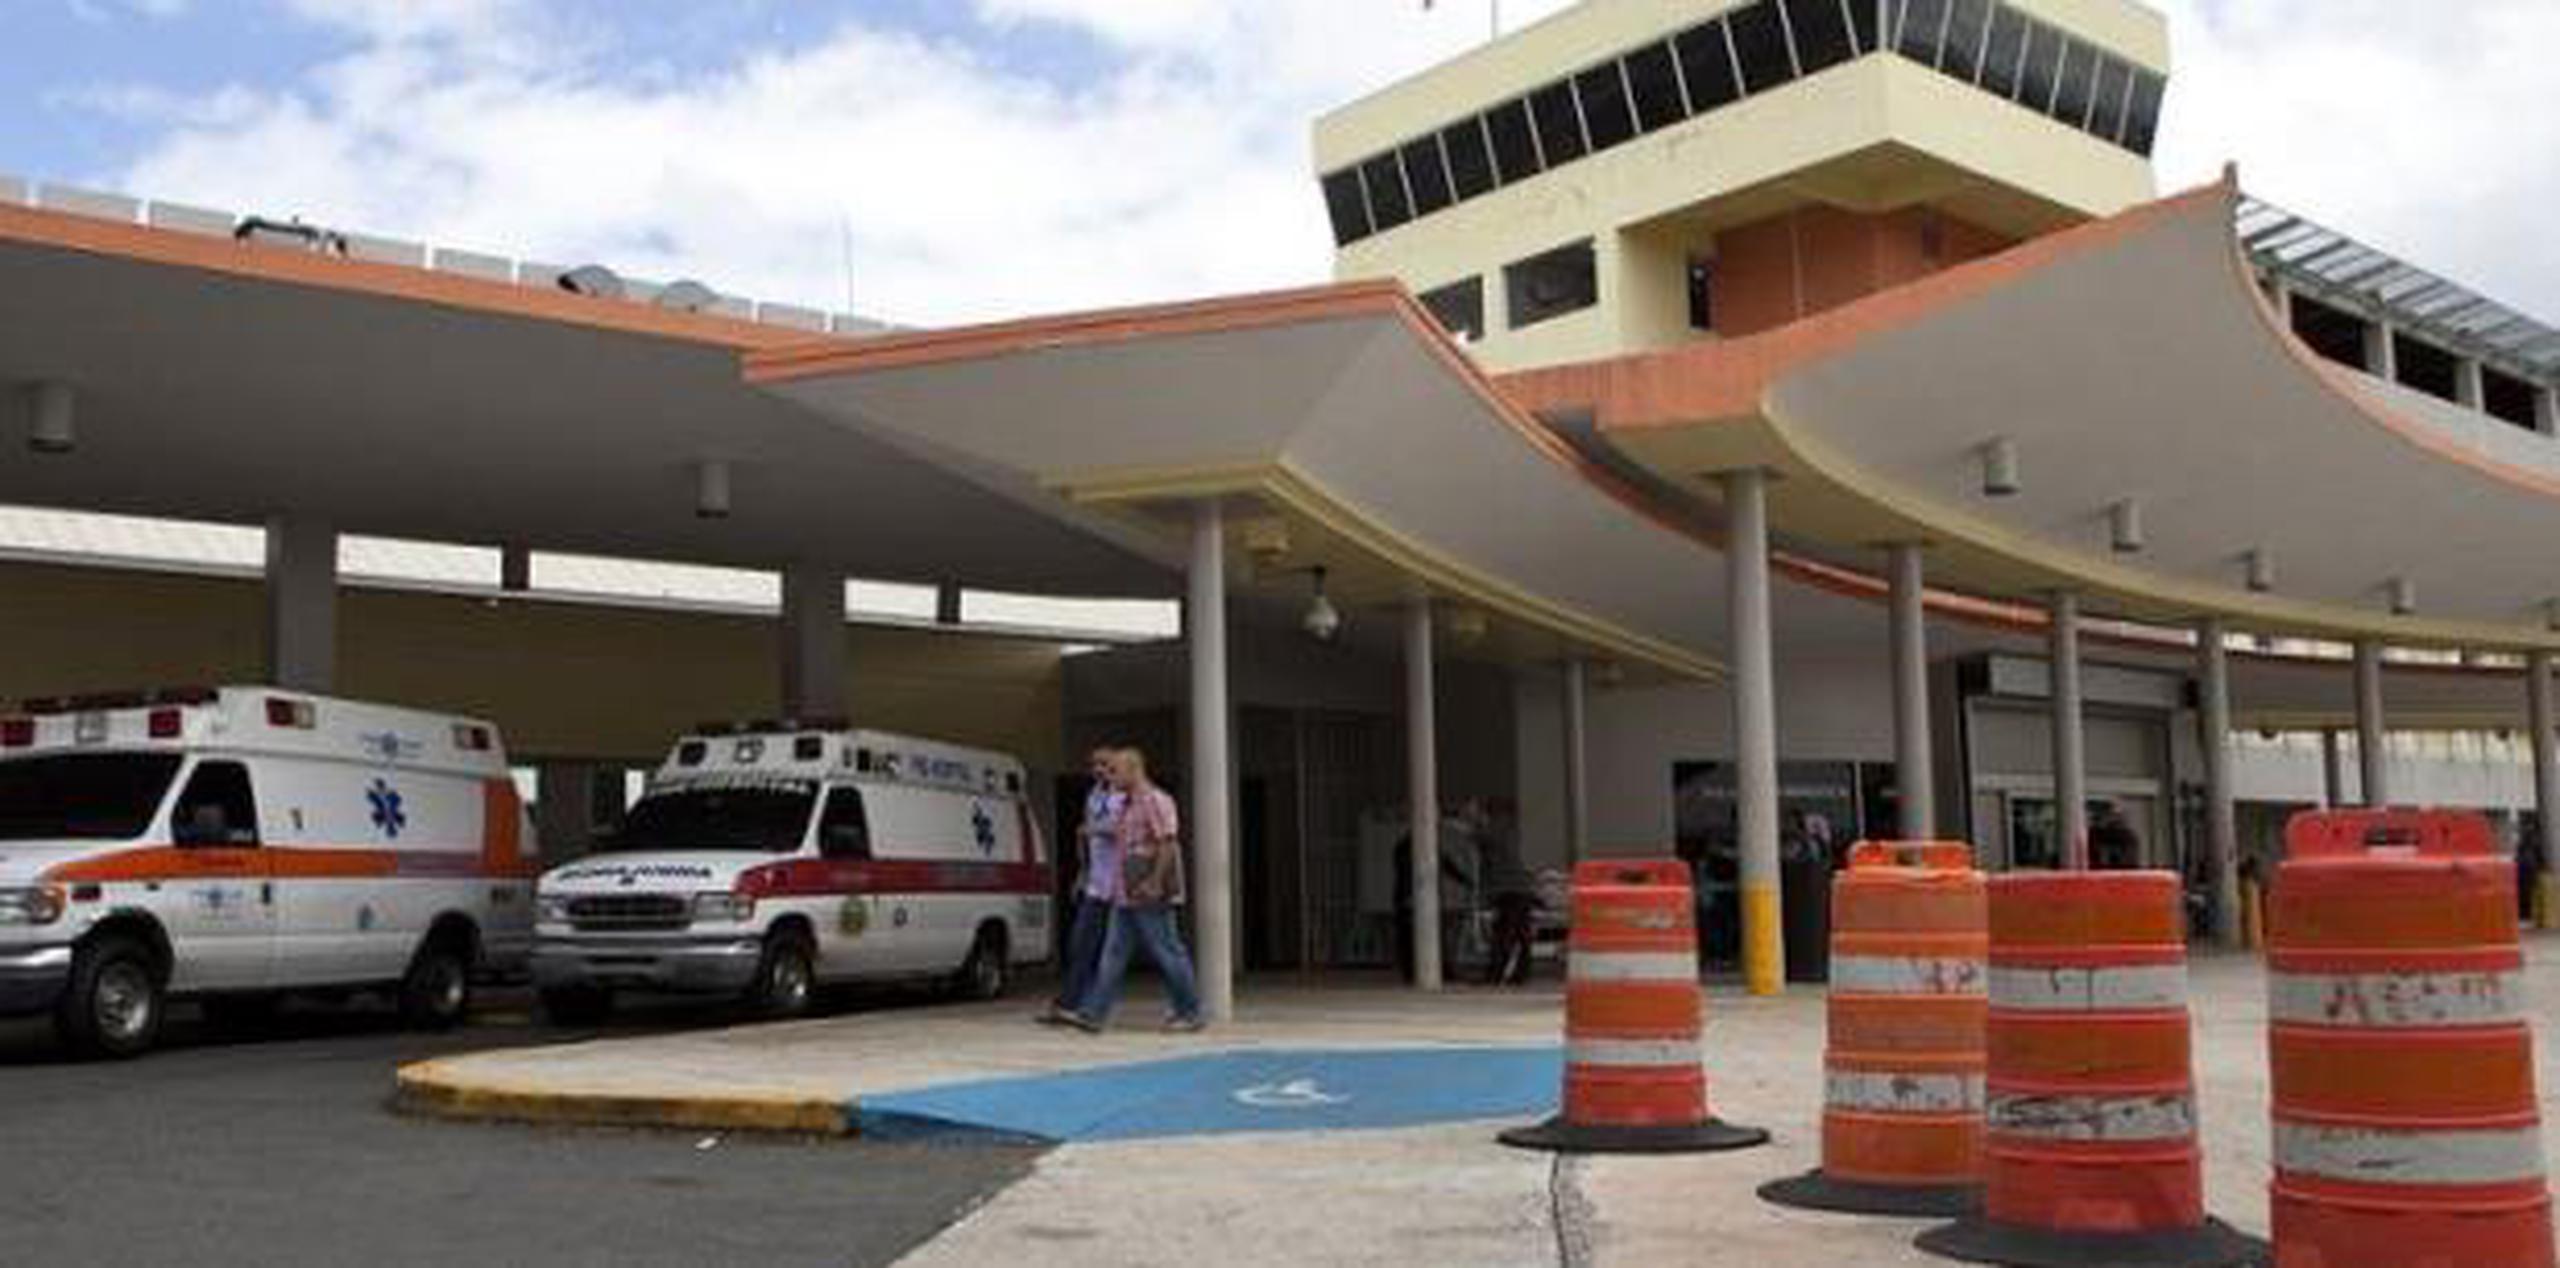 Paramédicos transportaron al herido al Centro Médico de Río Piedras donde el médico diagnosticó múltiples fracturas en la pelvis. Su condición era estable. (Archivo)